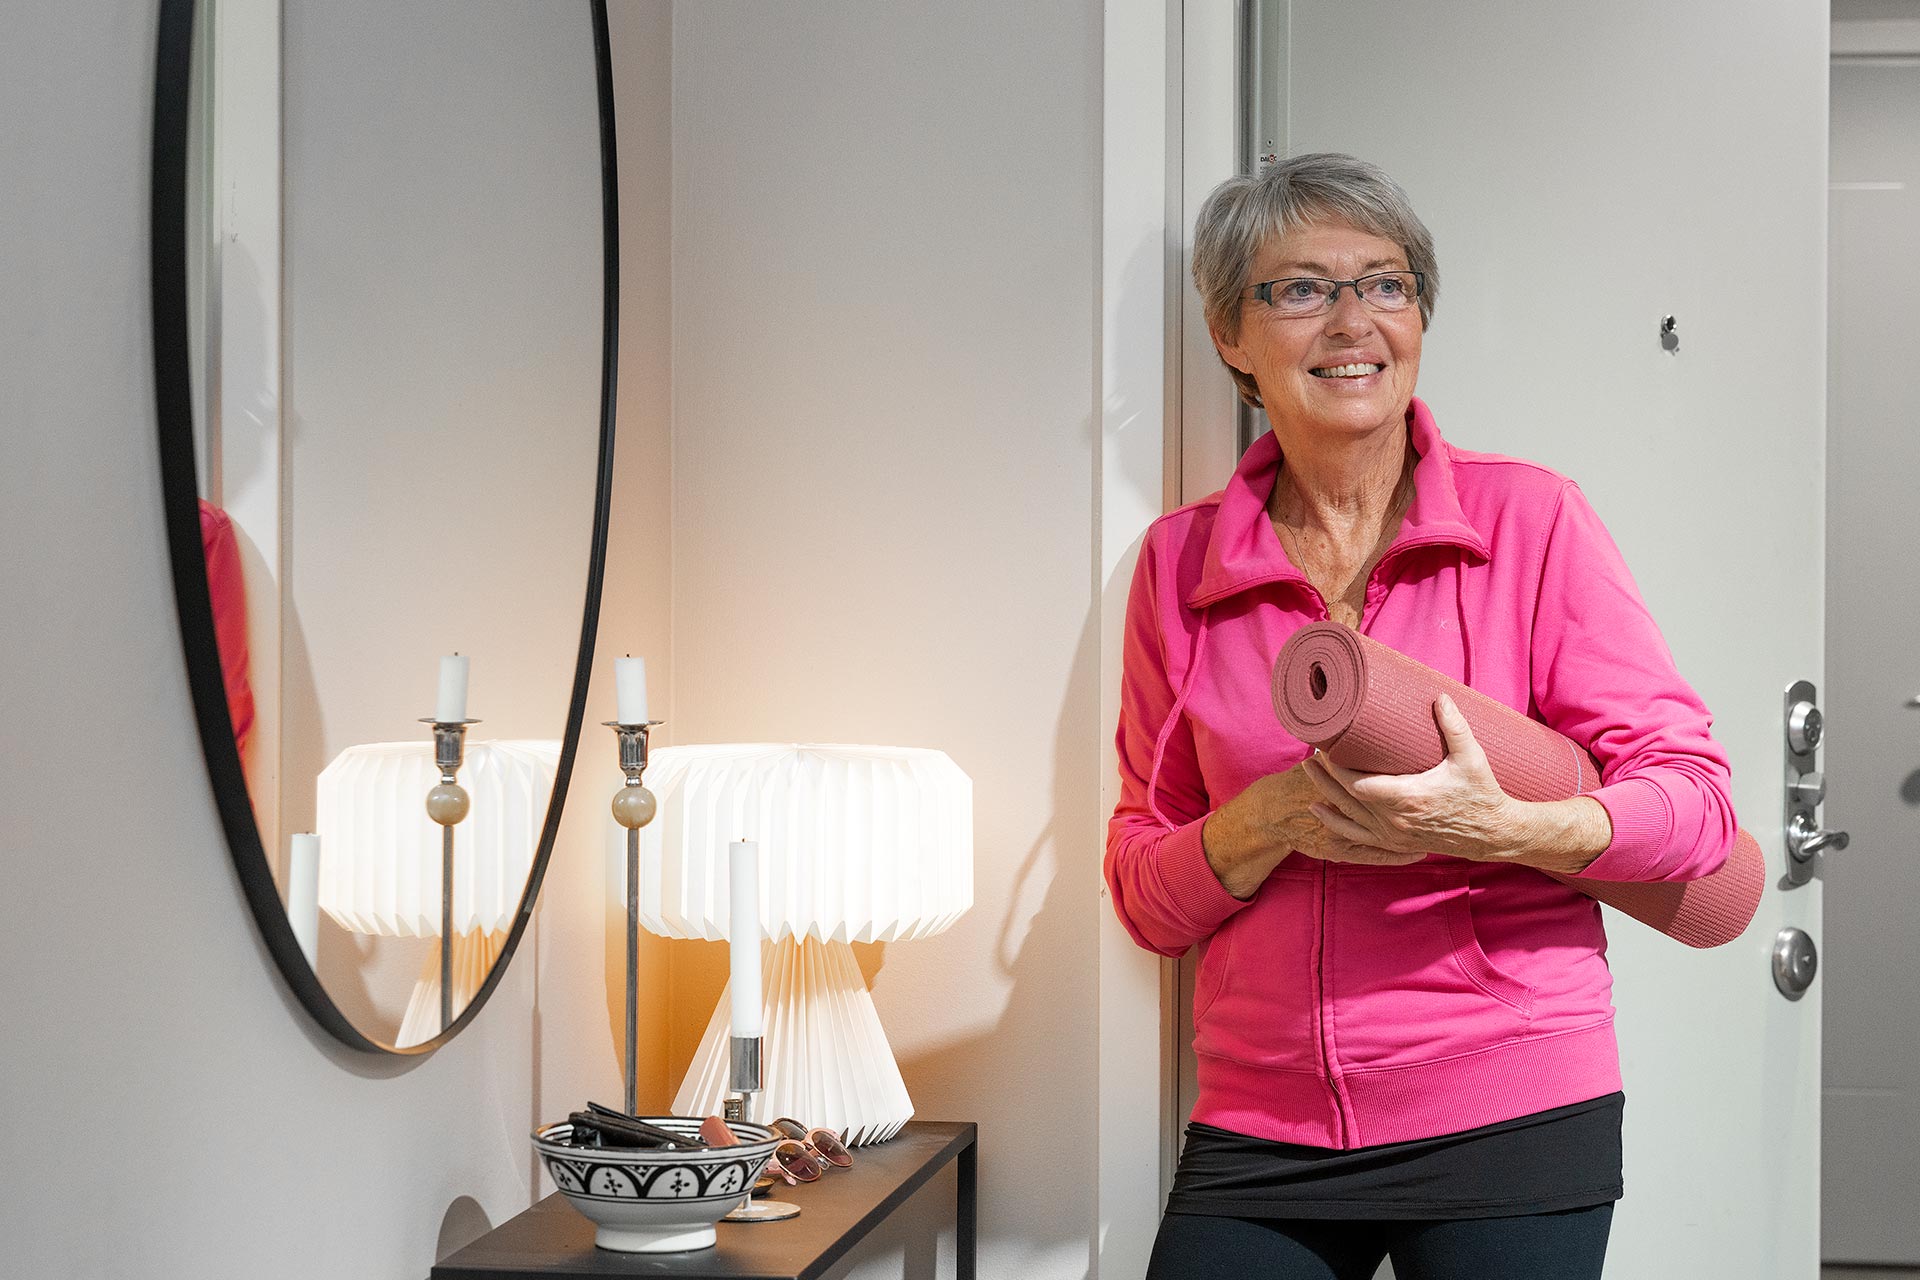 En gråhårig äldre kvinna står lutad mot en vägg med en rosa yogamatta under armen. I rummet hänger en stor oval spegel och på byrån står det en lampa och lyser.